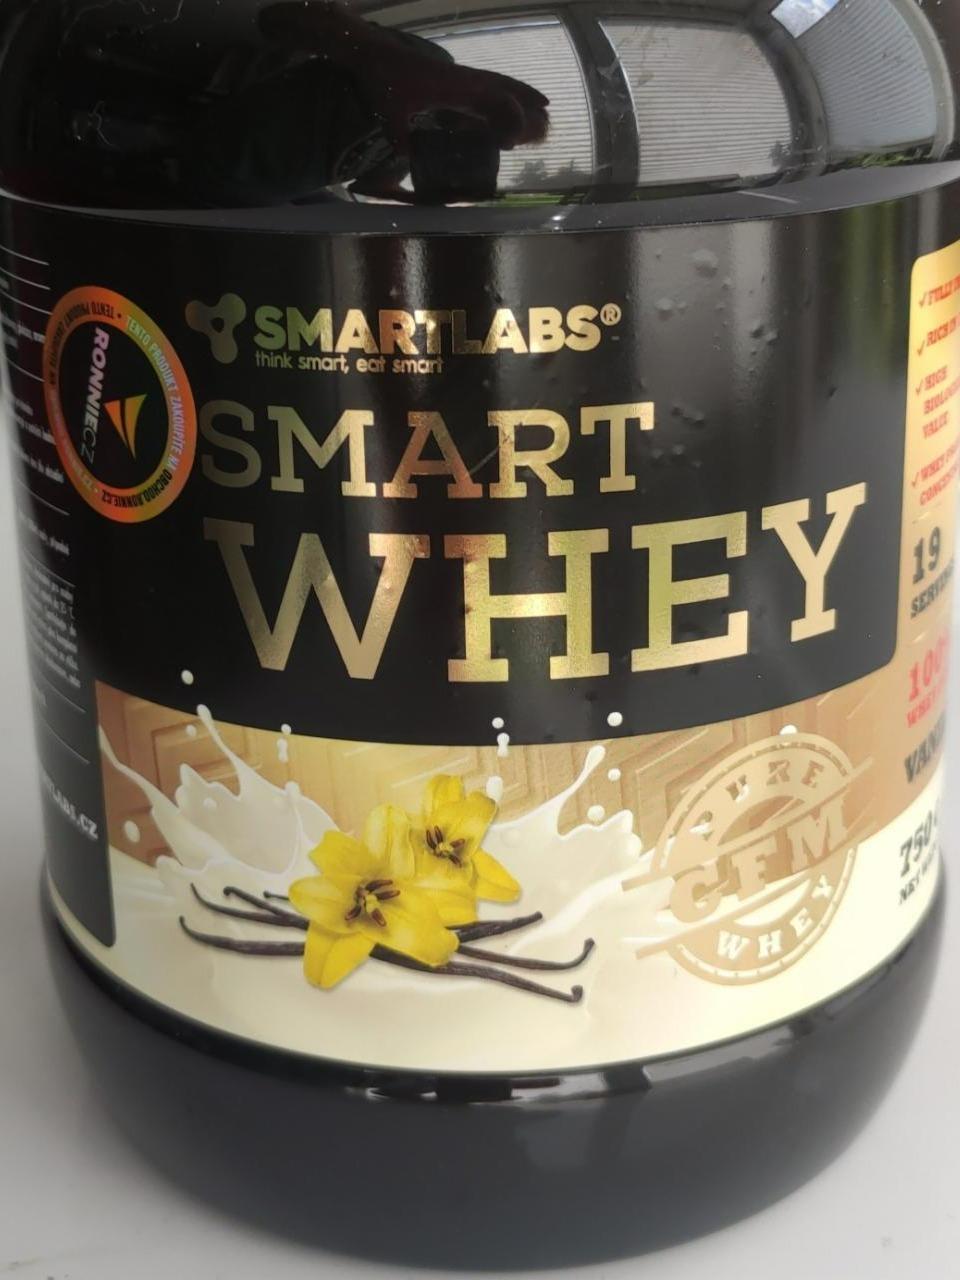 Fotografie - Smart Whey Protein vanilka Smartlabs